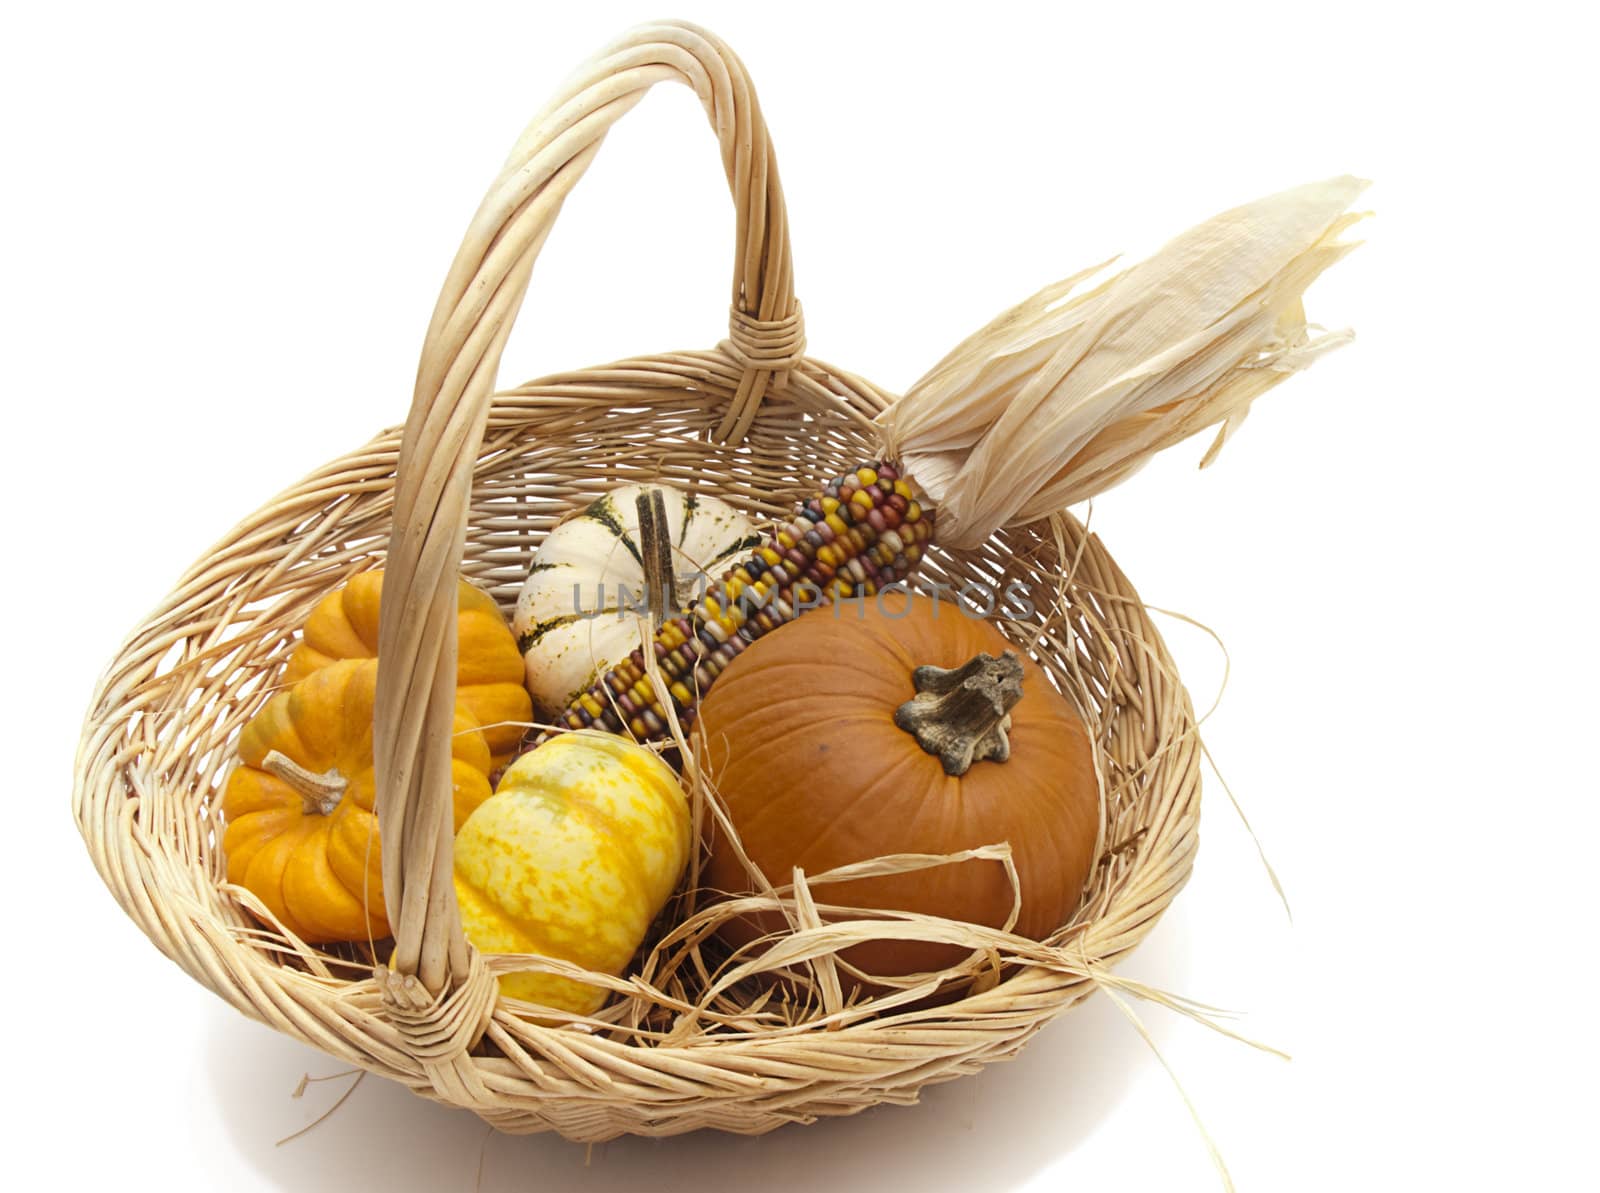 Ornamental pumpkins in a basket by waxart